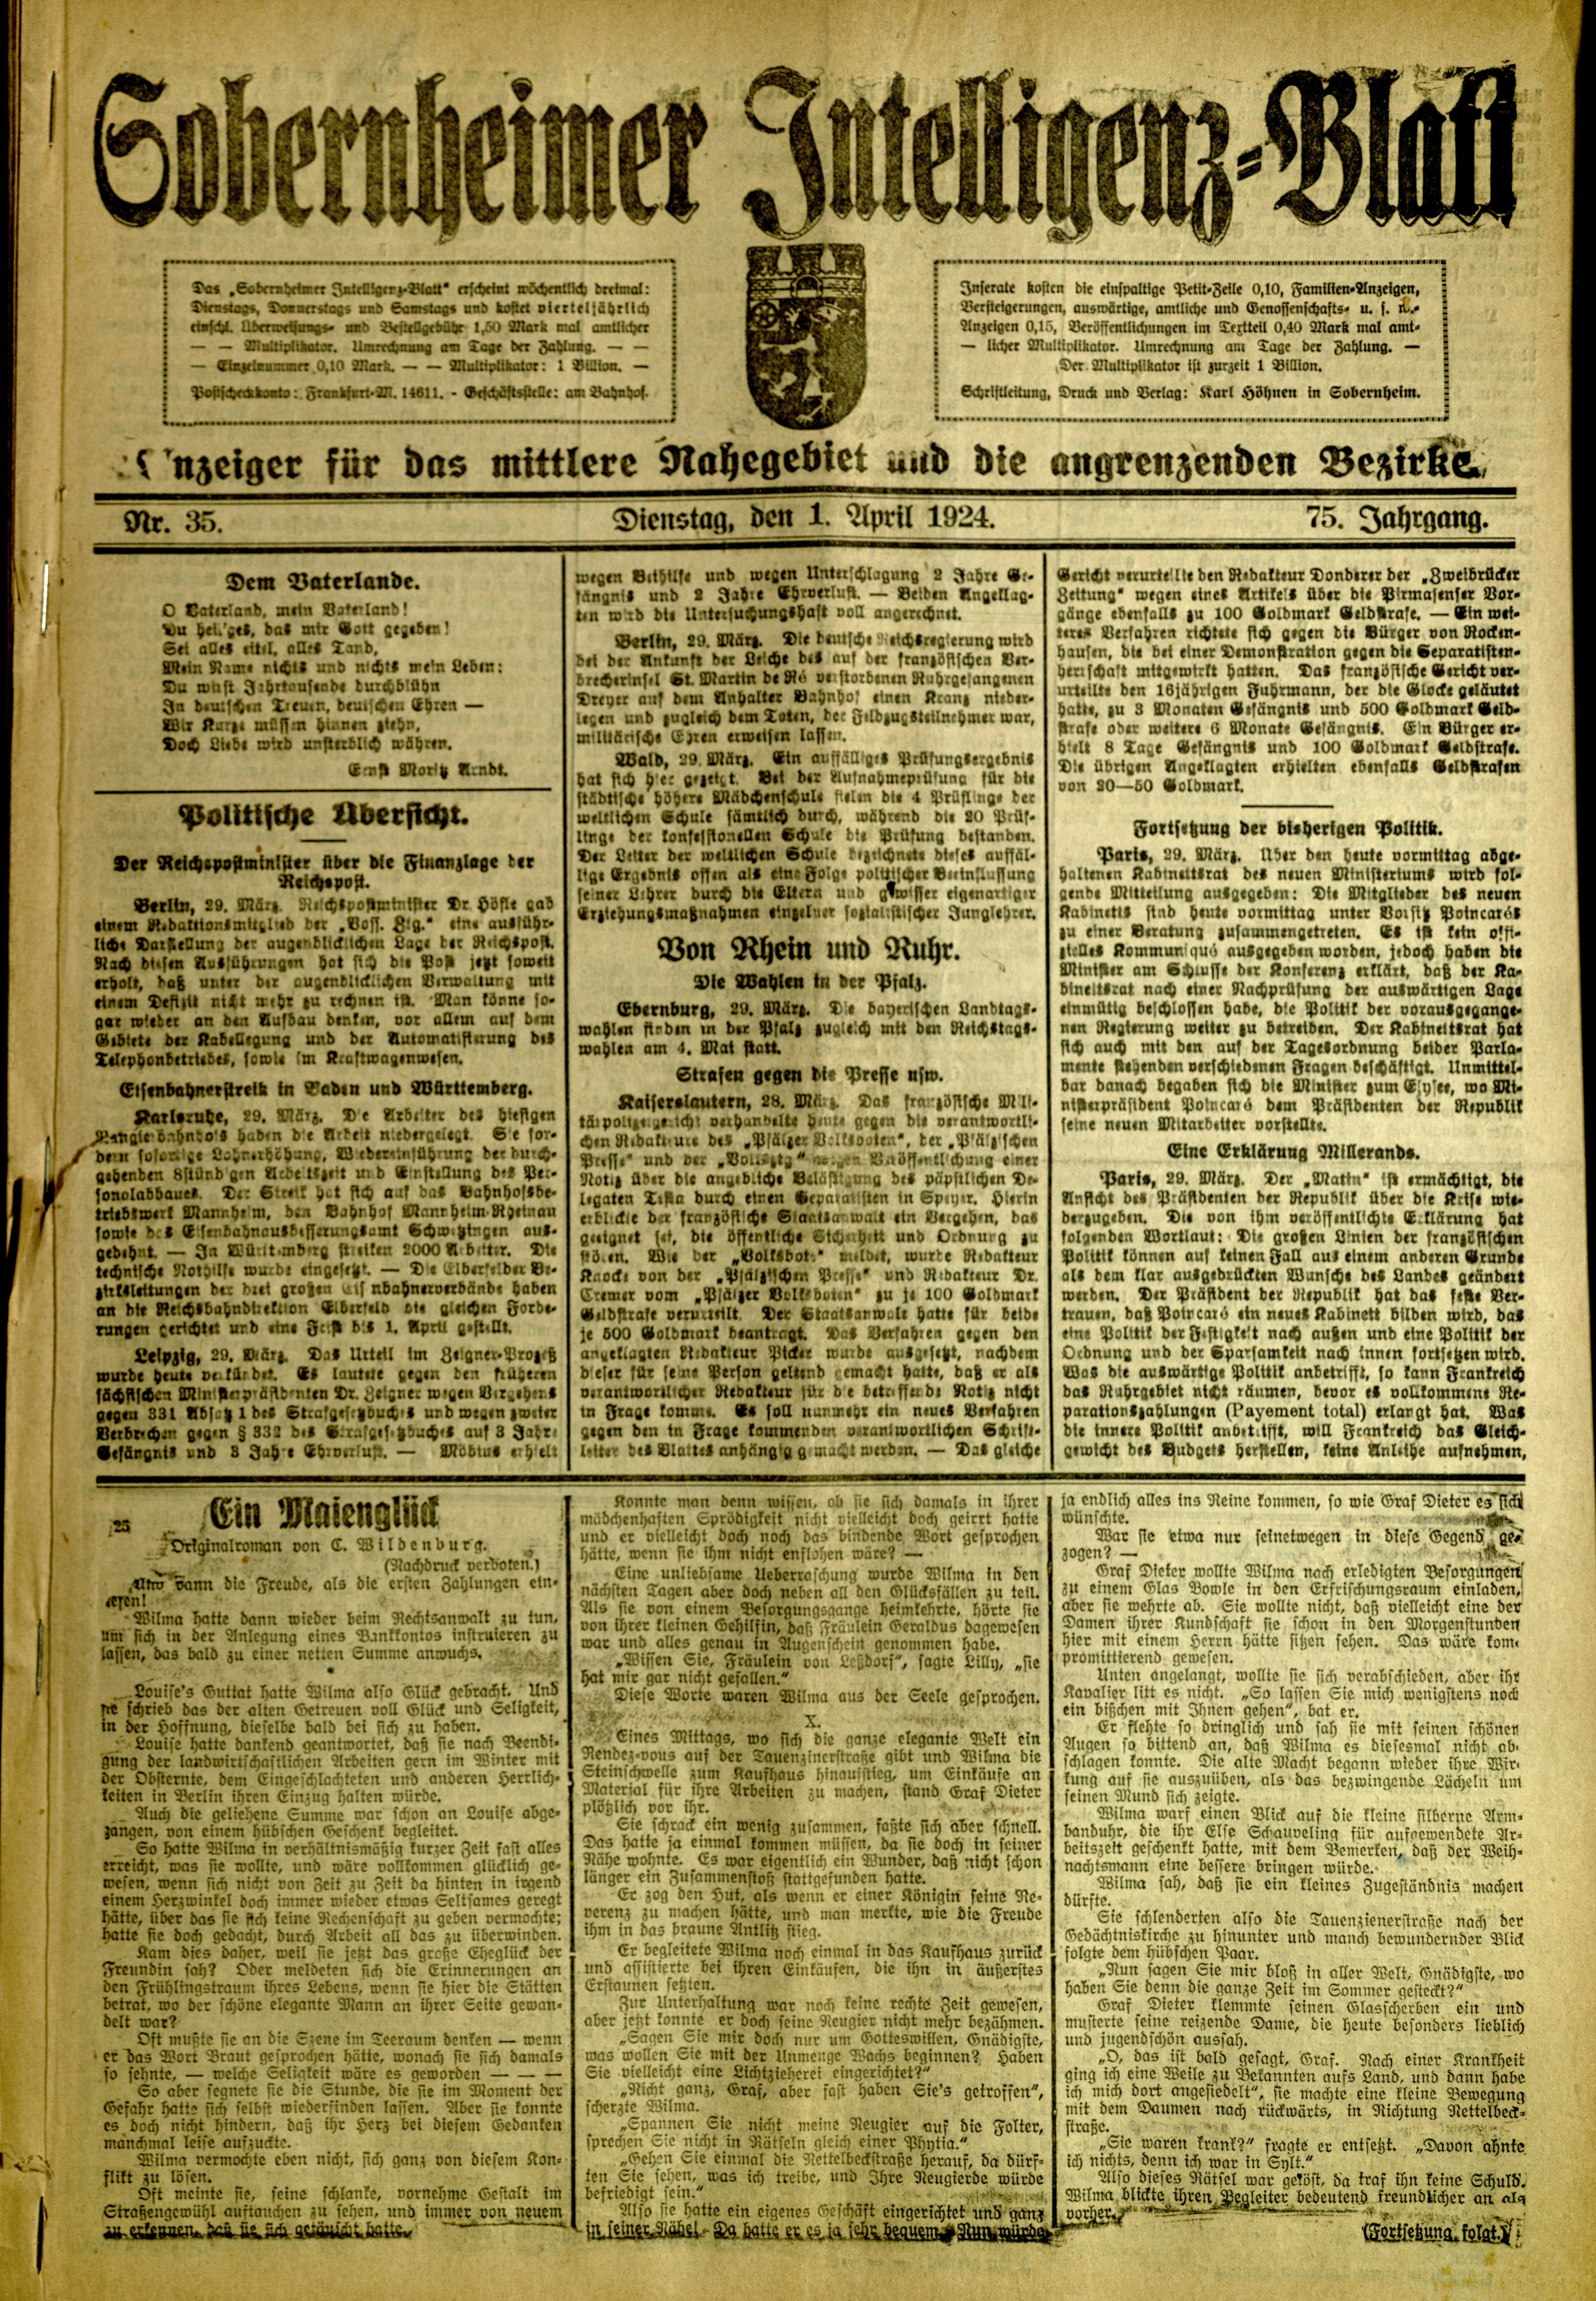 Zeitung: Sobernheimer Intelligenzblatt; April 1924, Jg. 73 Nr. 35 (Heimatmuseum Bad Sobernheim CC BY-NC-SA)